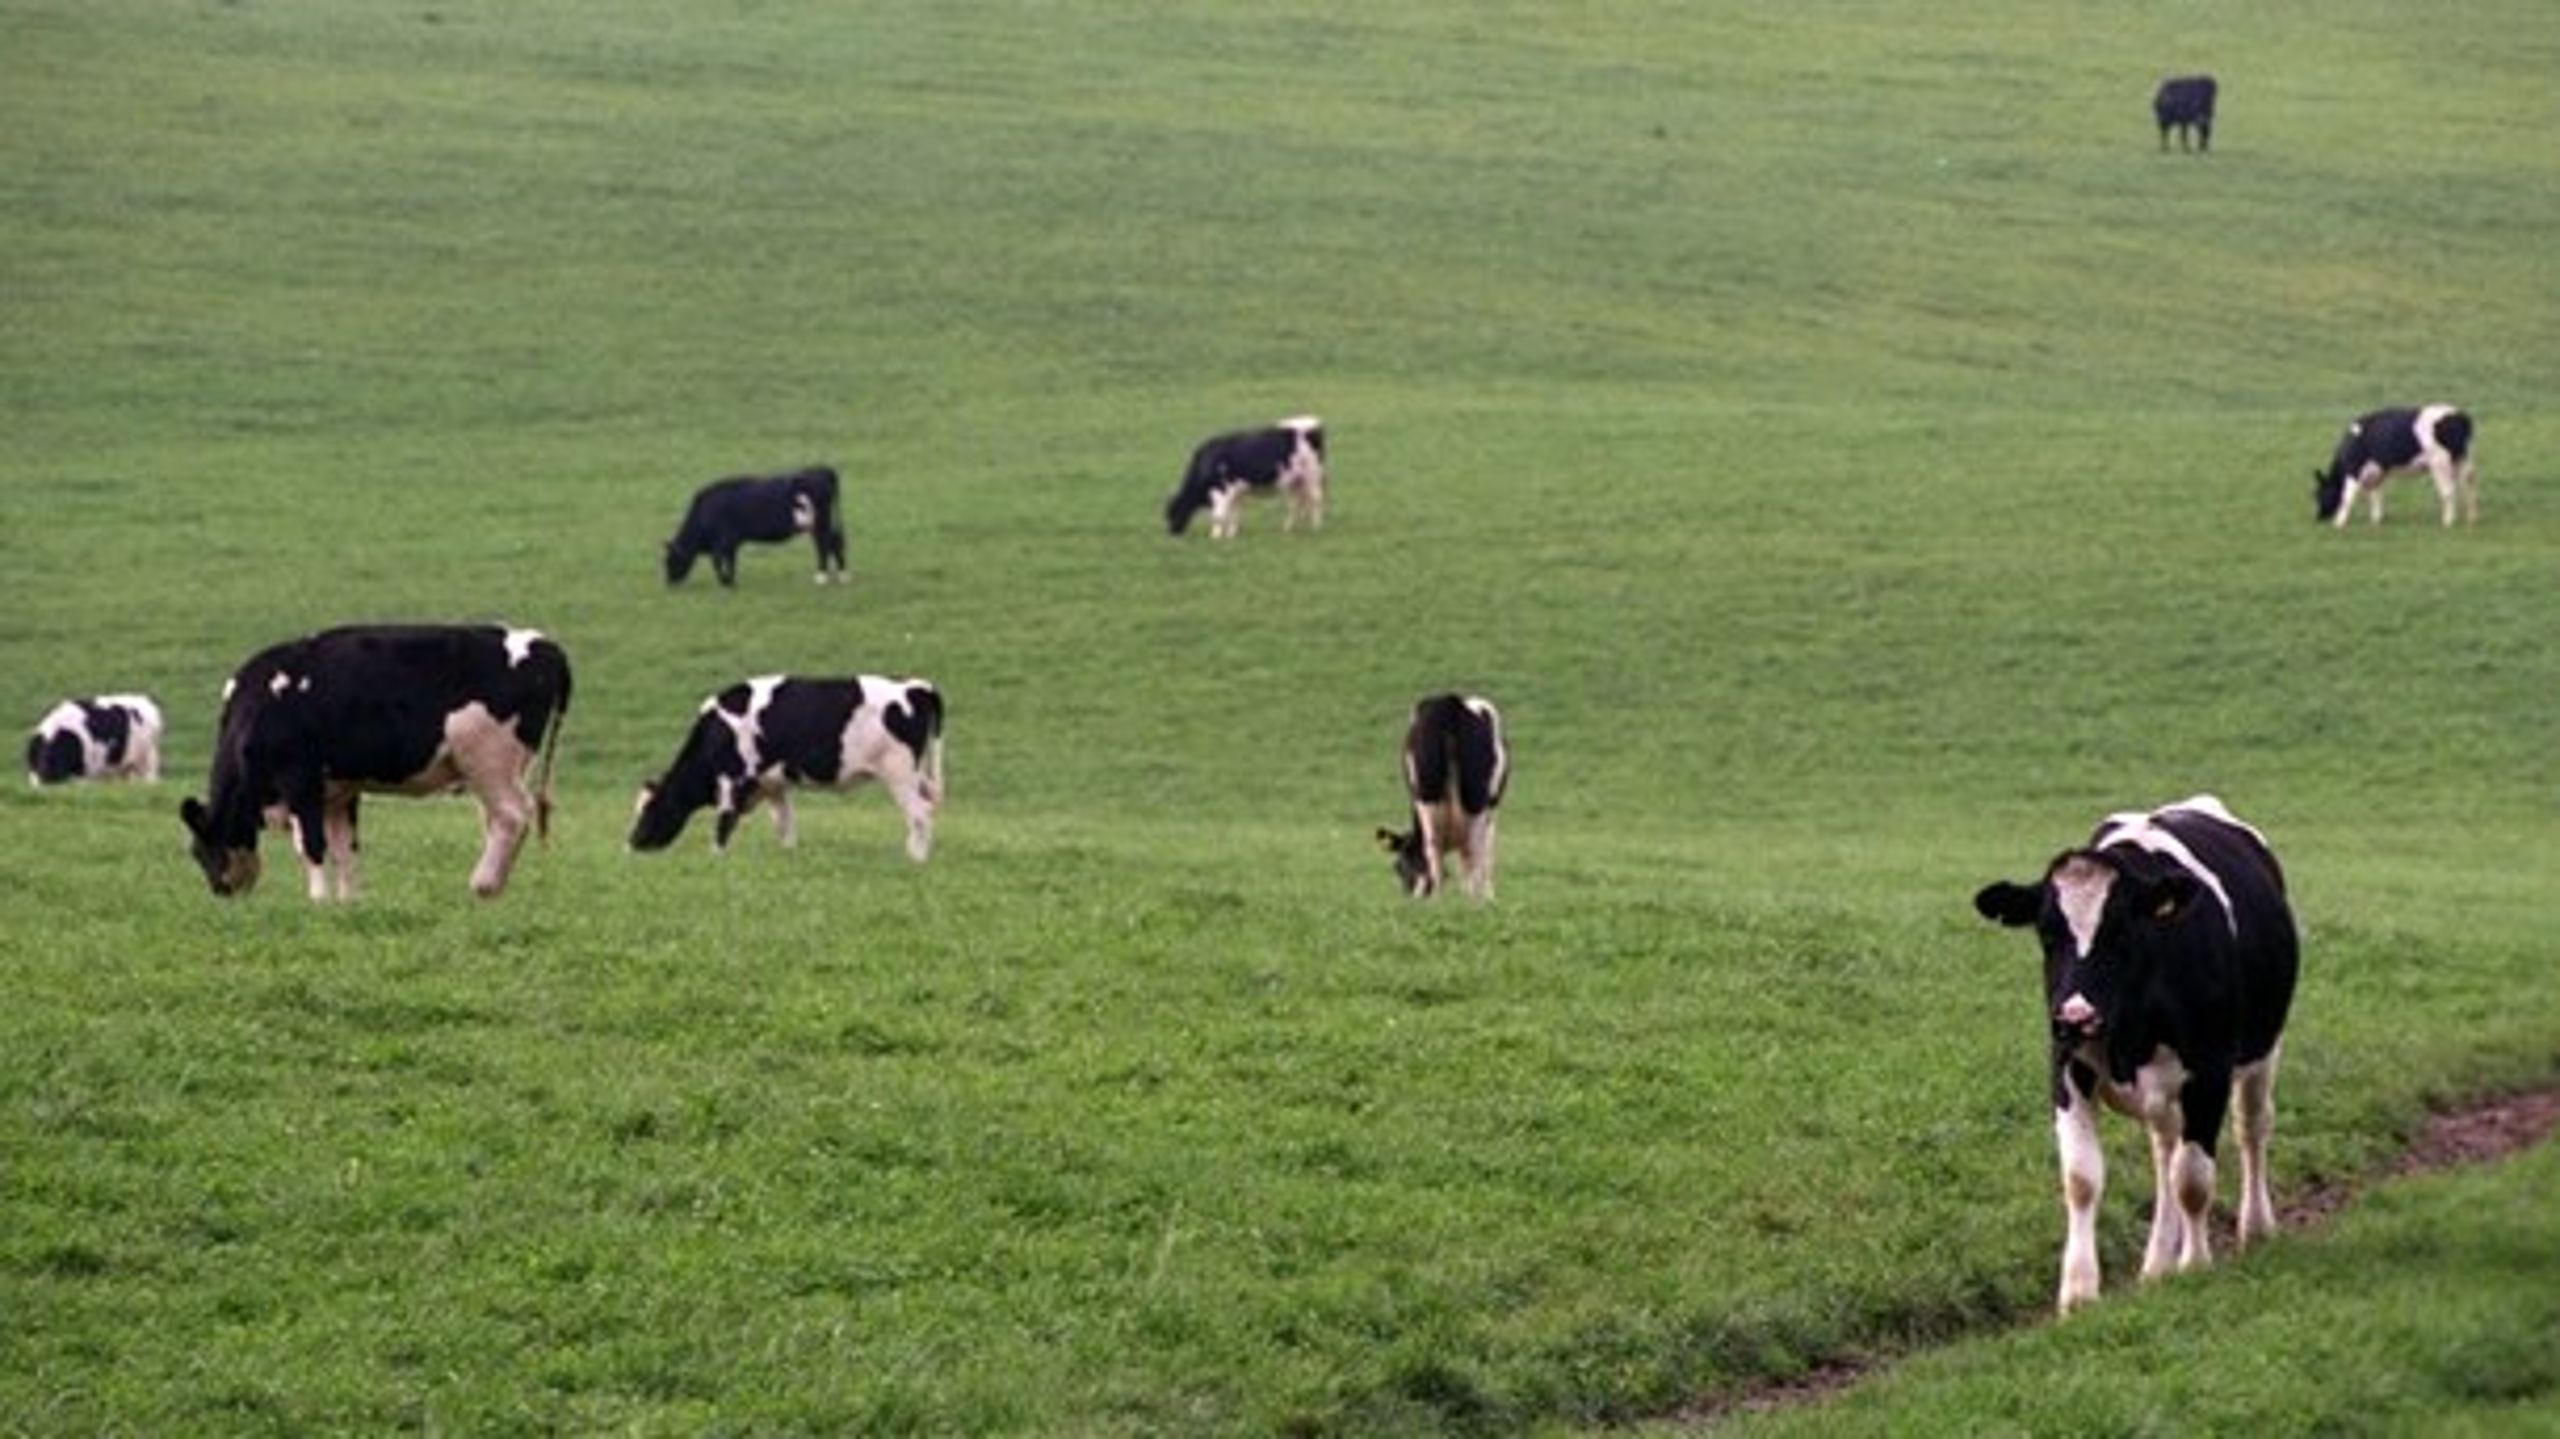 Vi skal omstille, så græs bliver en handelsvare, der, udover at skulle hentes af køerne på markerne, også skal forarbejdes til protein og bruges til energiproduktion og gødning, mener Danmarks Naturfredningsforening.